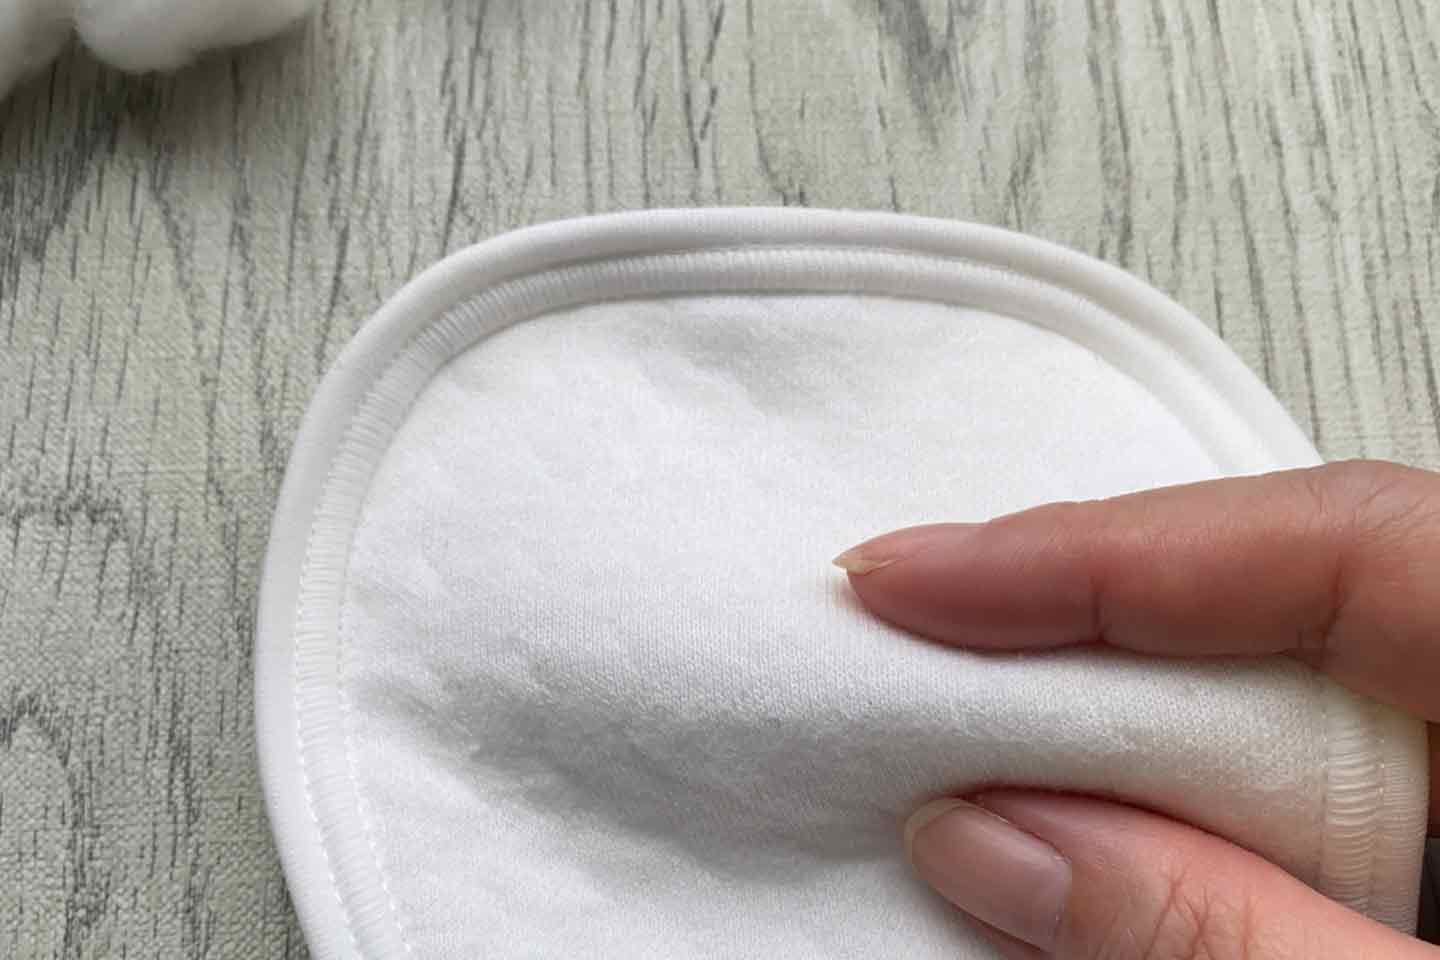 『omuwan』のおむつカバーの中にある吸水布パッド。人間の赤ちゃん用布おむつと同じ綿素材を使用